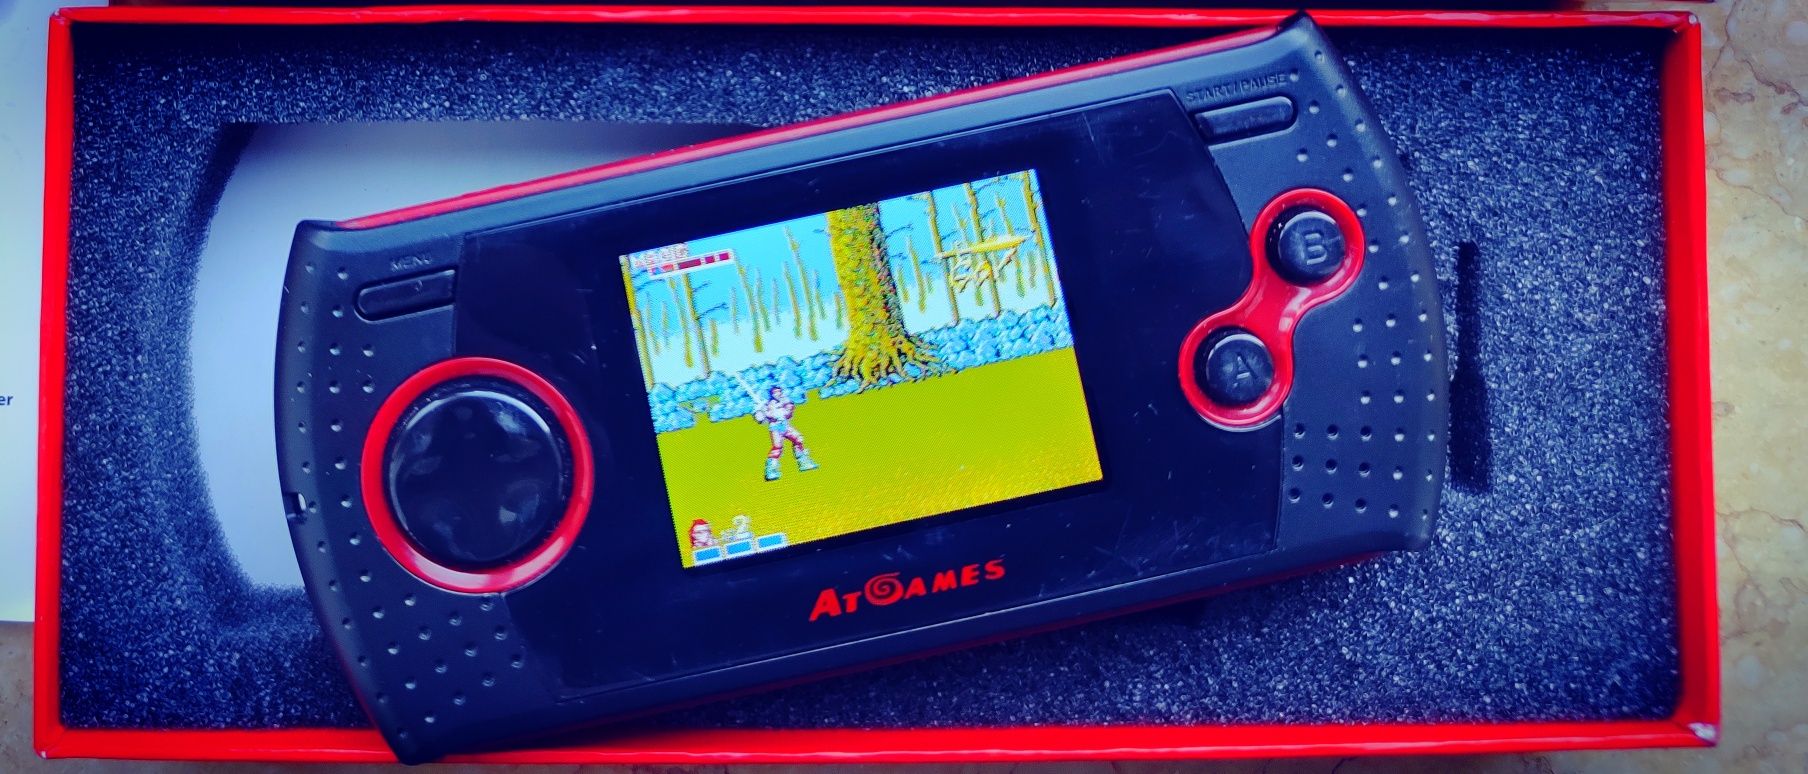 Sega - The arcade game portable